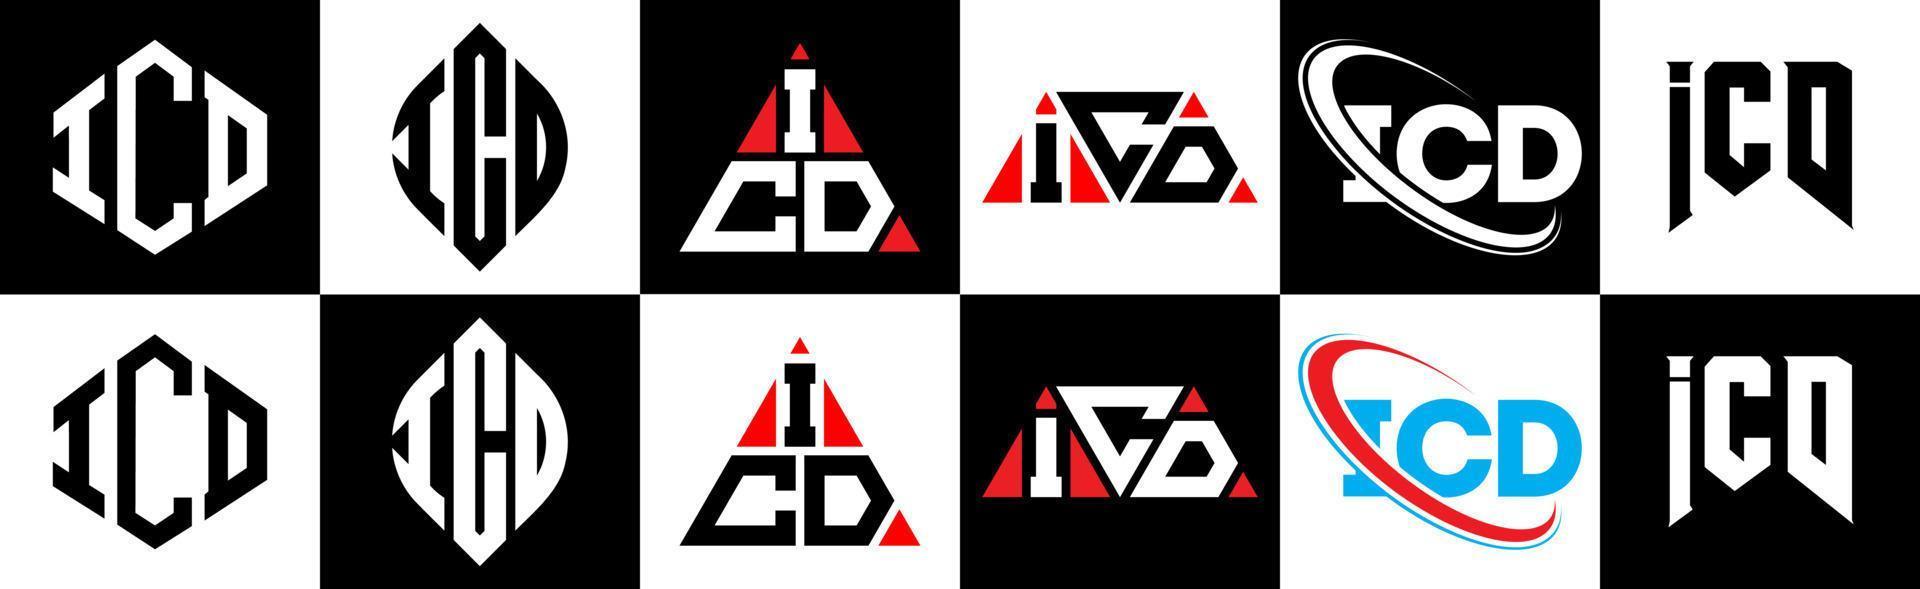 création de logo de lettre icd en six styles. polygone icd, cercle, triangle, hexagone, style plat et simple avec logo de lettre de variation de couleur noir et blanc dans un plan de travail. logo icd minimaliste et classique vecteur